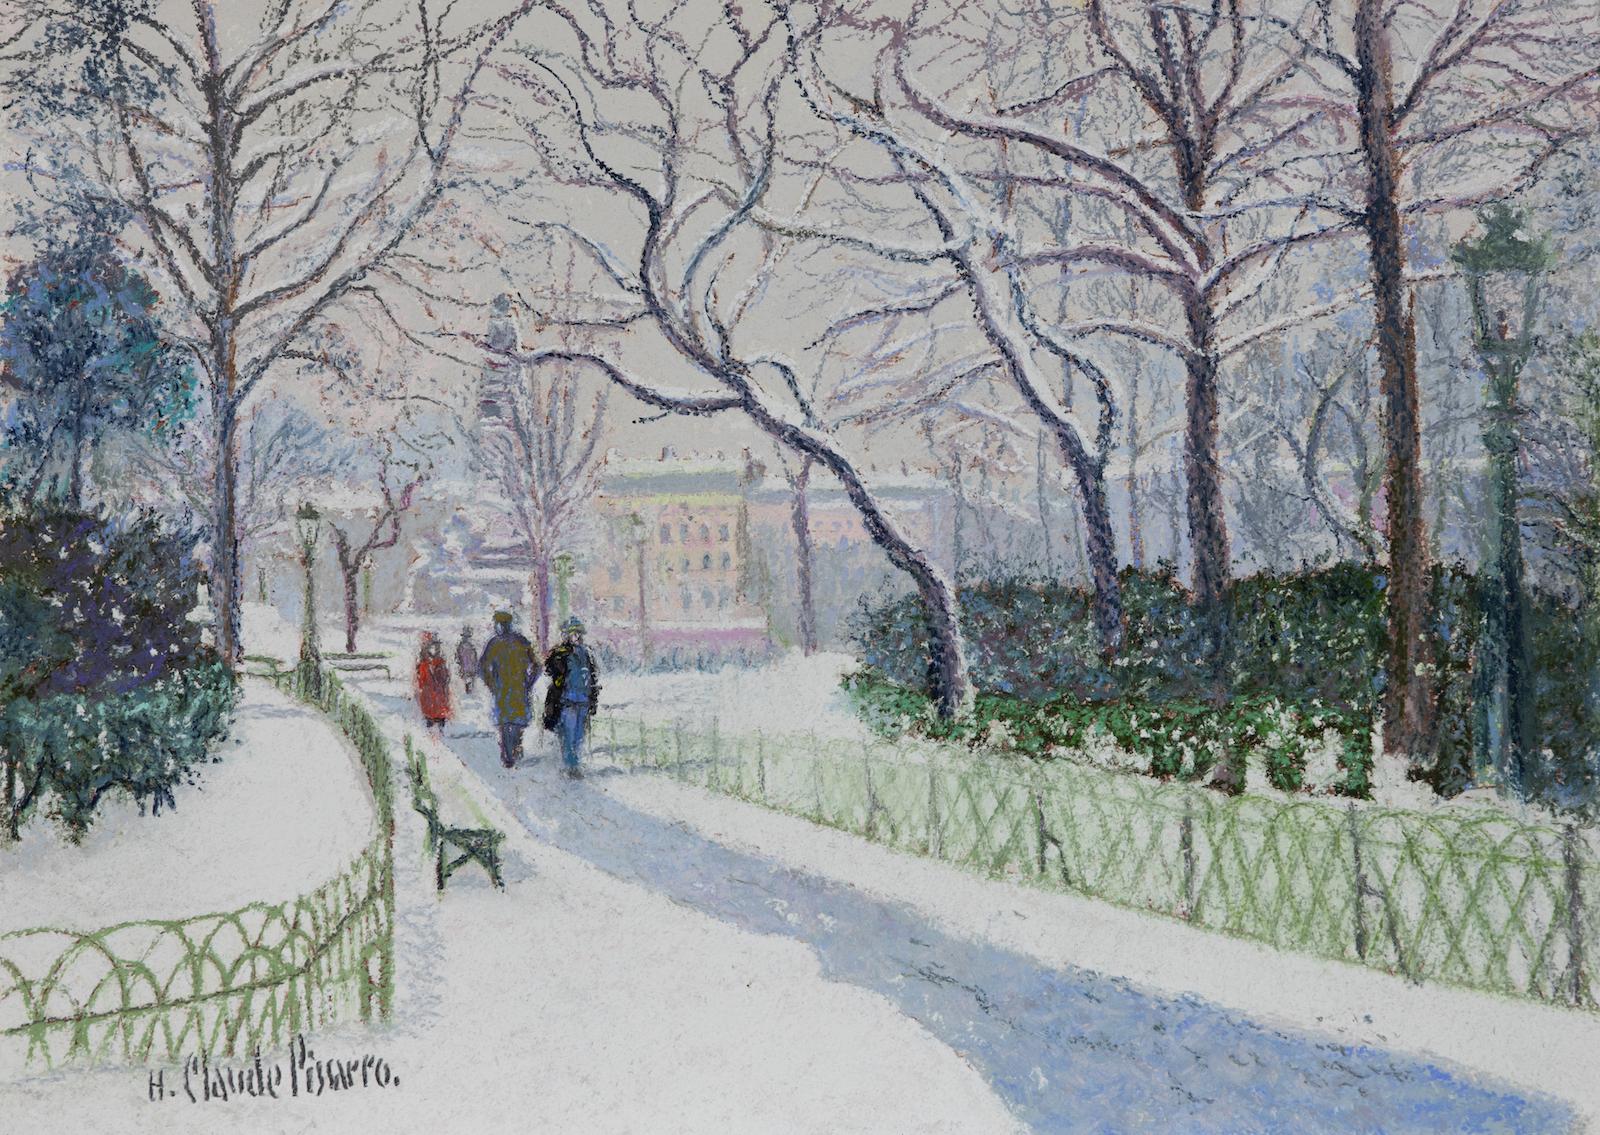 Figurative Painting Hughes Claude Pissarro - La Place Carnot Sous la Neige (Lyon) par H. Claude Pissarro - Peinture de scène de neige